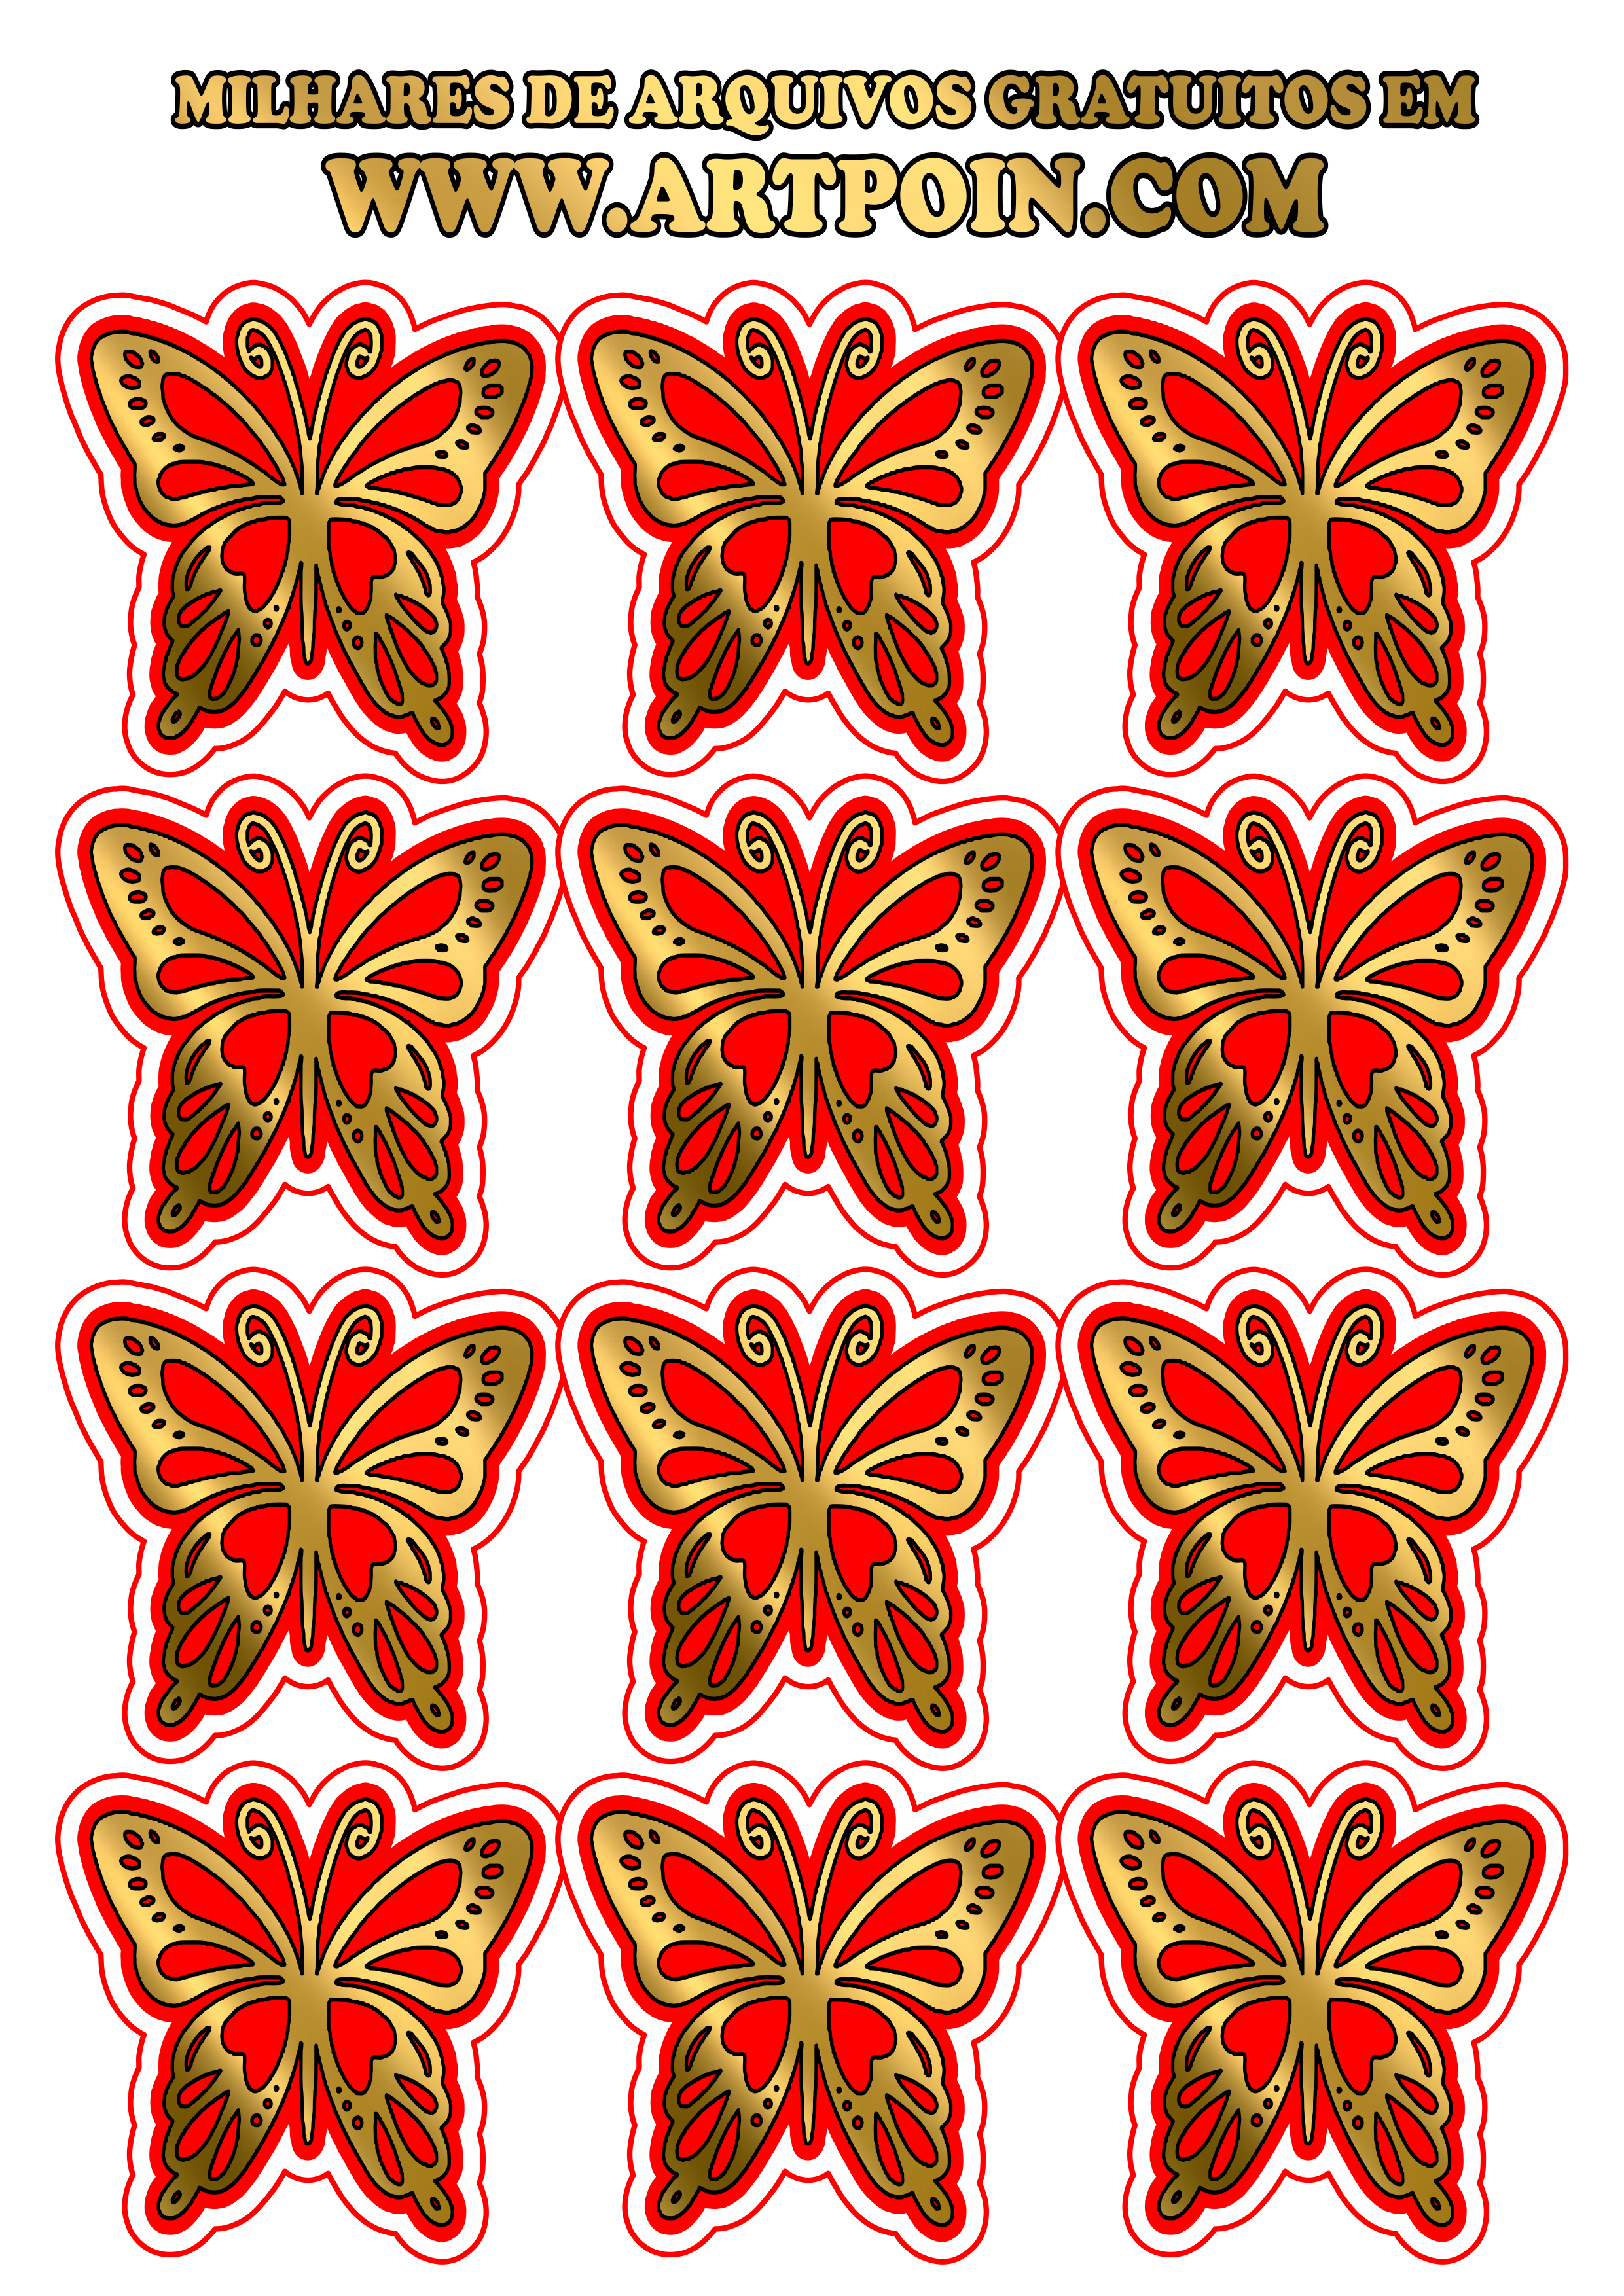 Tags borboletas douradas arquivo grátis para decoração png